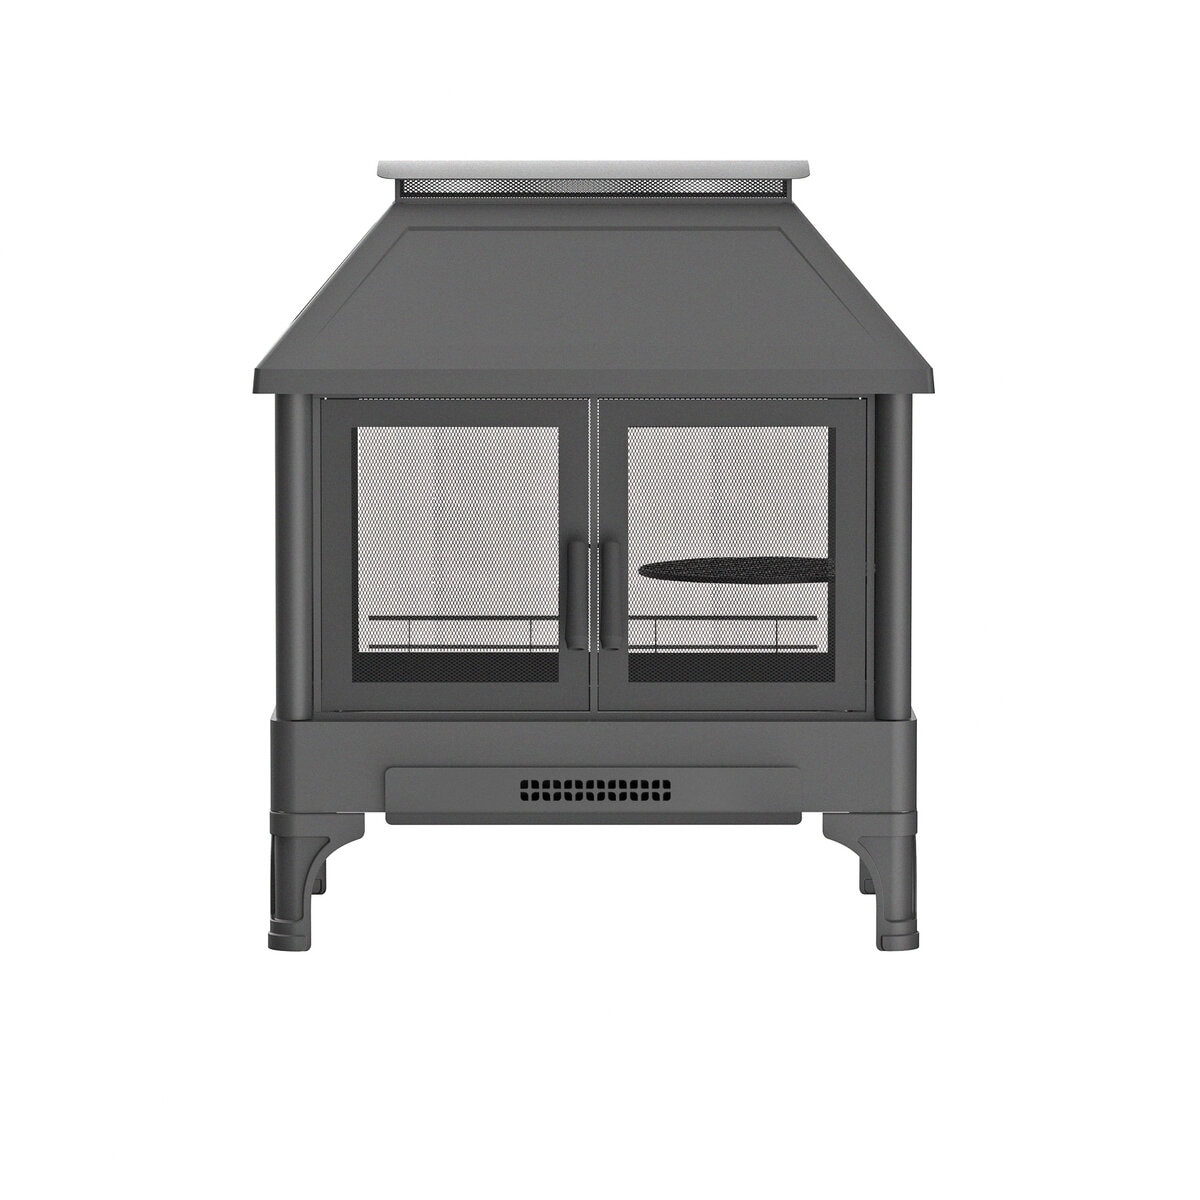 屋外暖炉 ファイヤーピット 調理用グリル網付き | Costco Japan